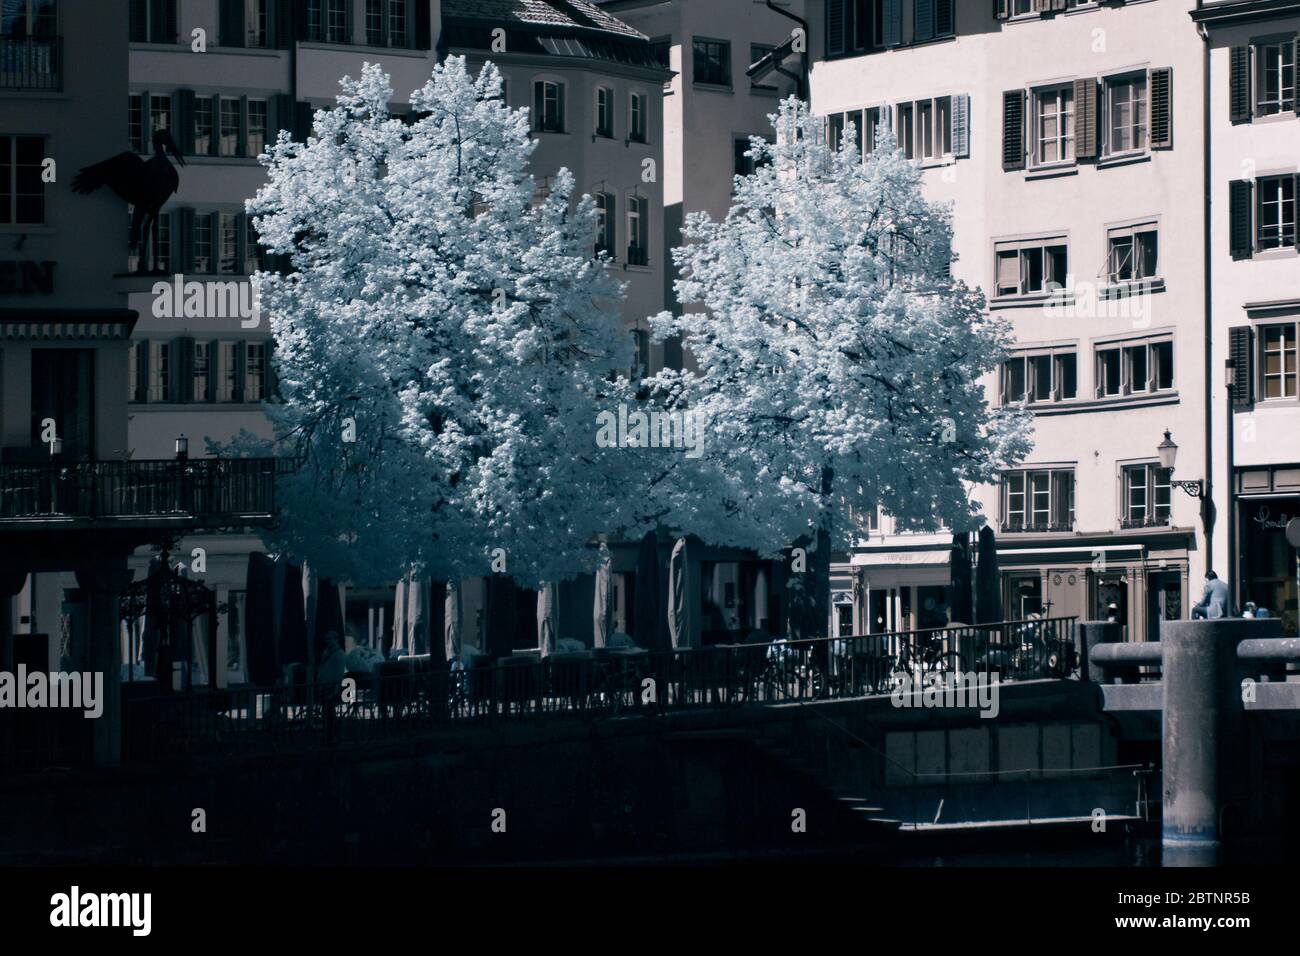 infrared image - square of weinplatz - city of zurich - switzerland Stock Photo